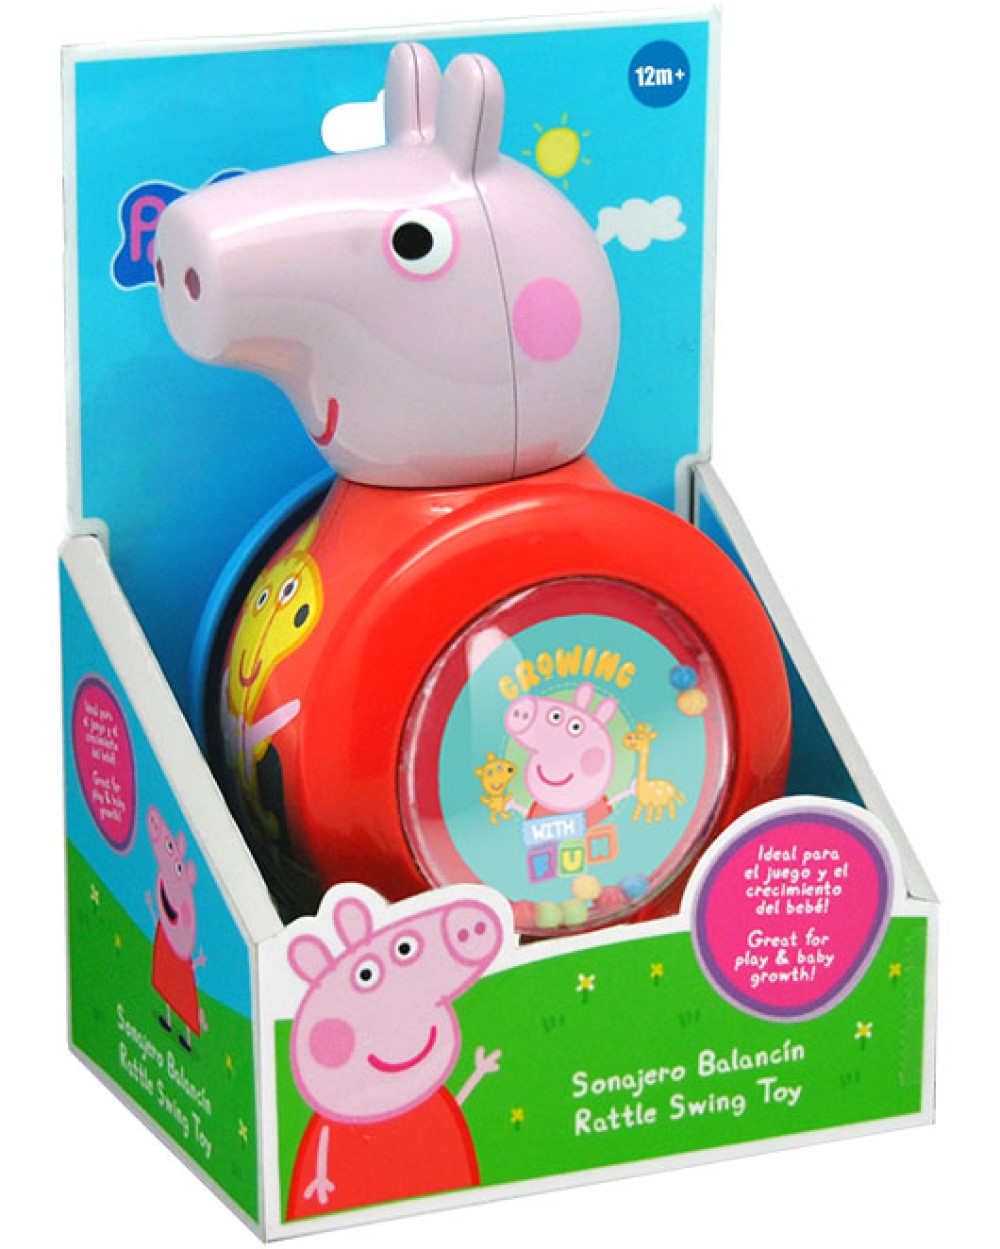 Babyspielzeug Stehauf Peppa Pig